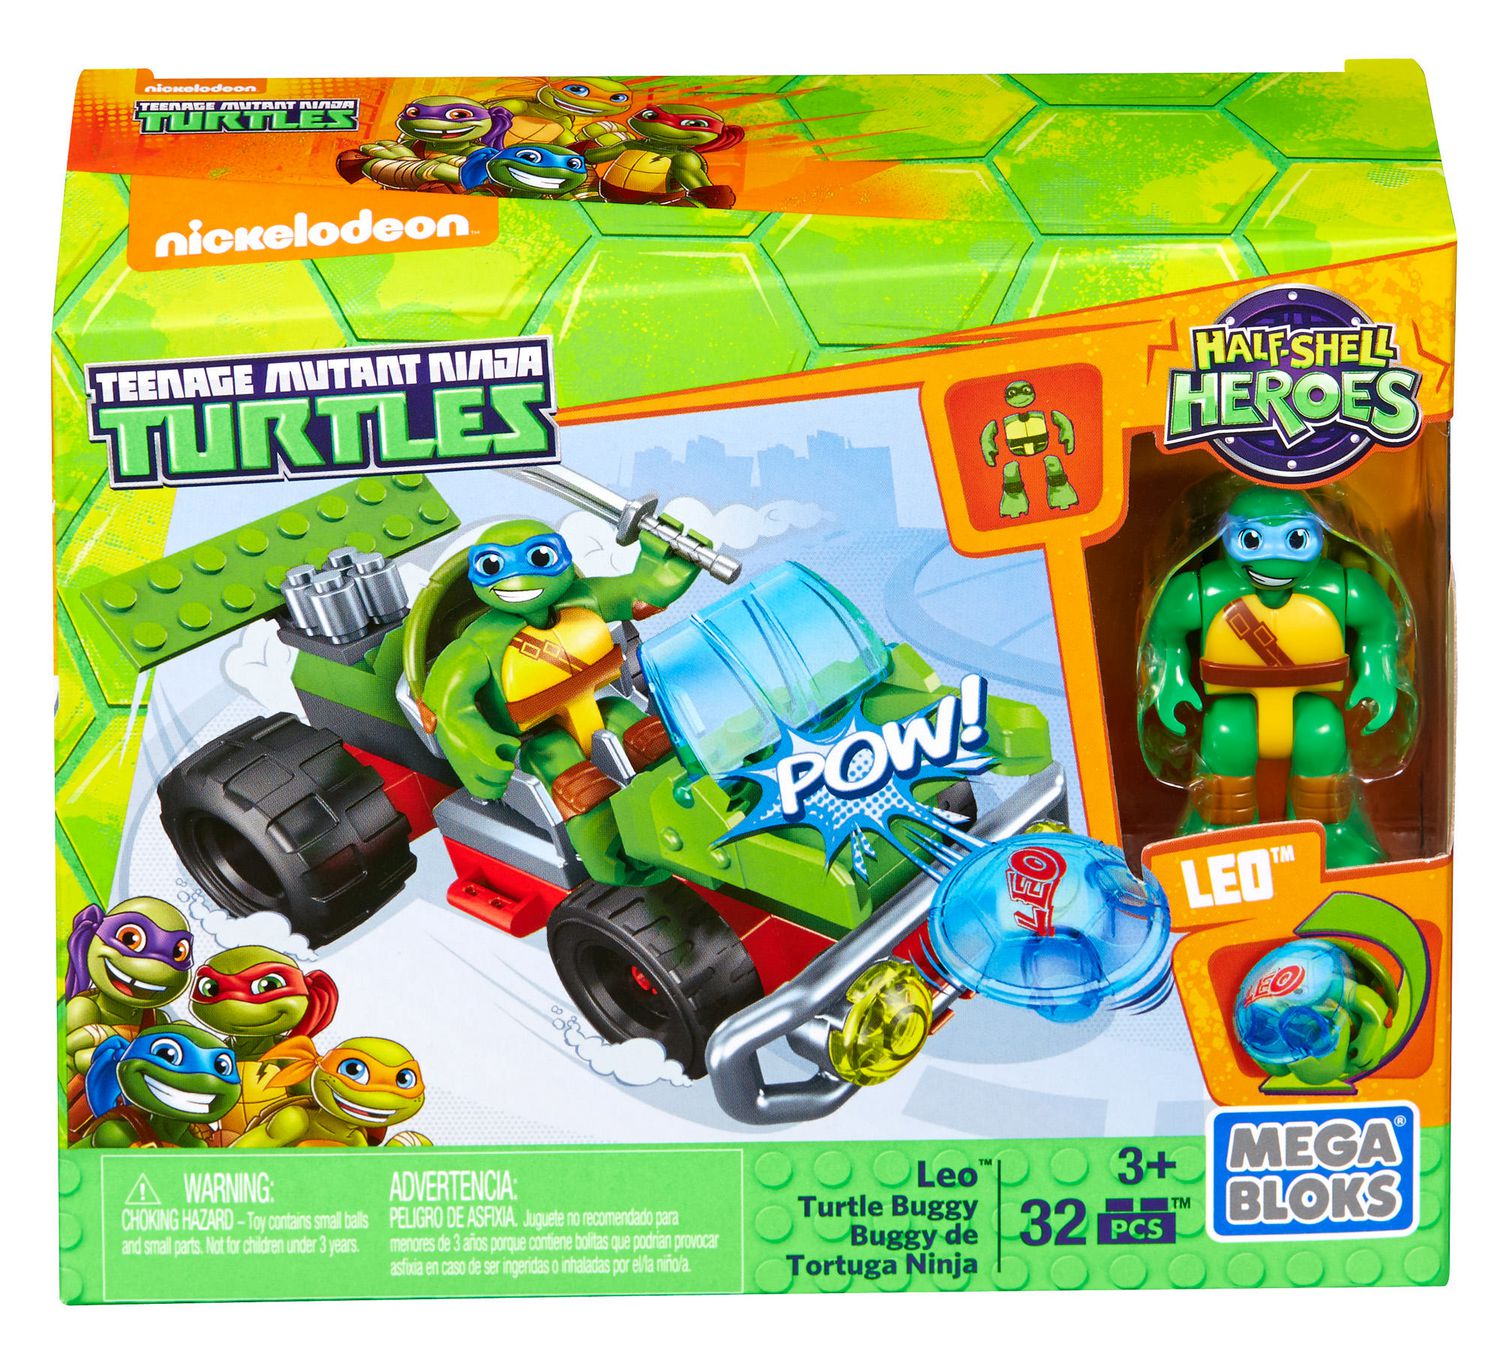 Mega Bloks Teenage Mutant Ninja Turtles 32 Pieces Leo Turtle Buggy New In Box 